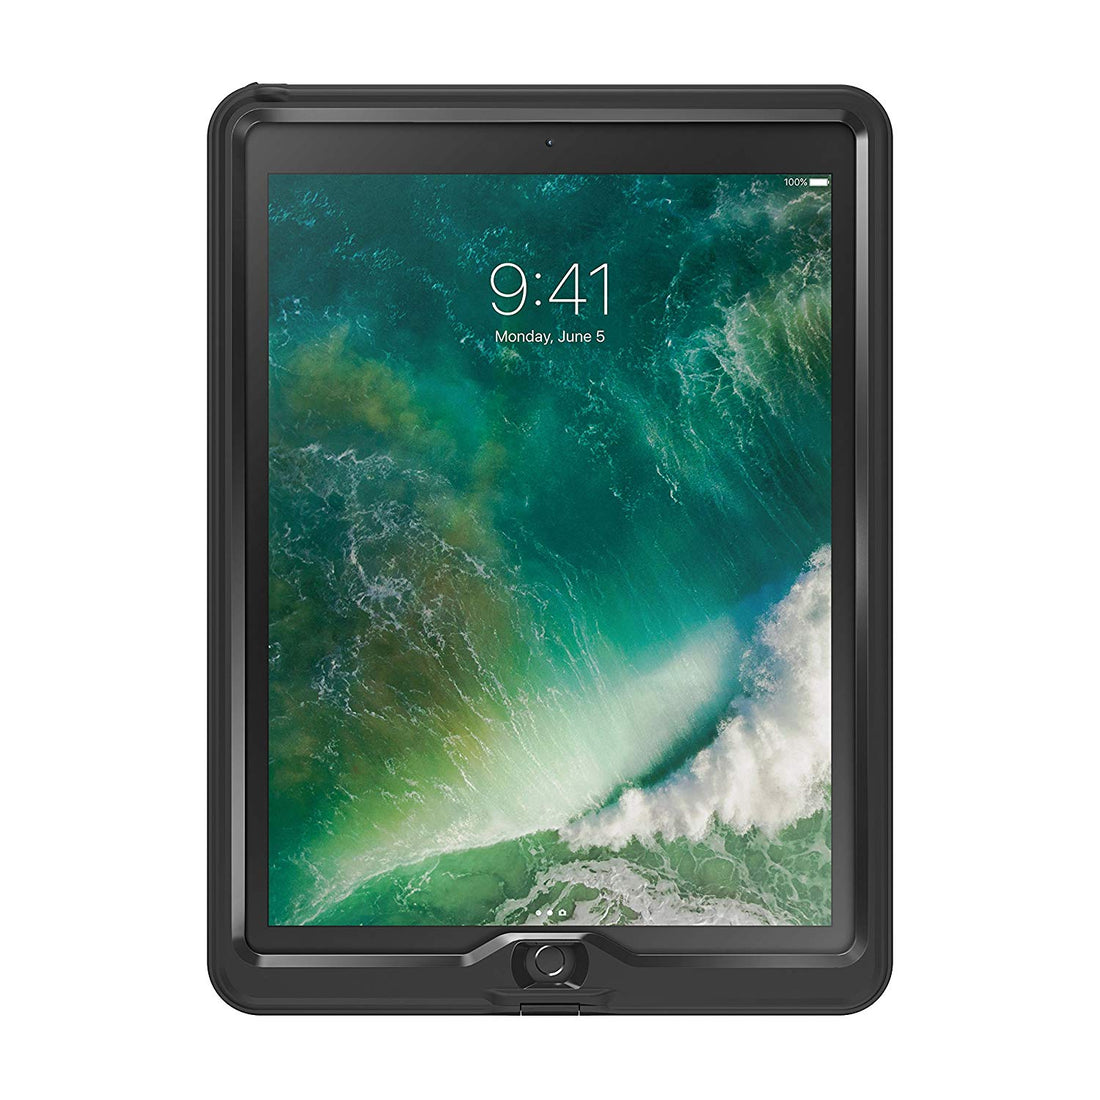 LifeProof NUUD SERIES Waterproof Case for iPad Pro 12.9&quot; (2nd Gen) - Black (New)